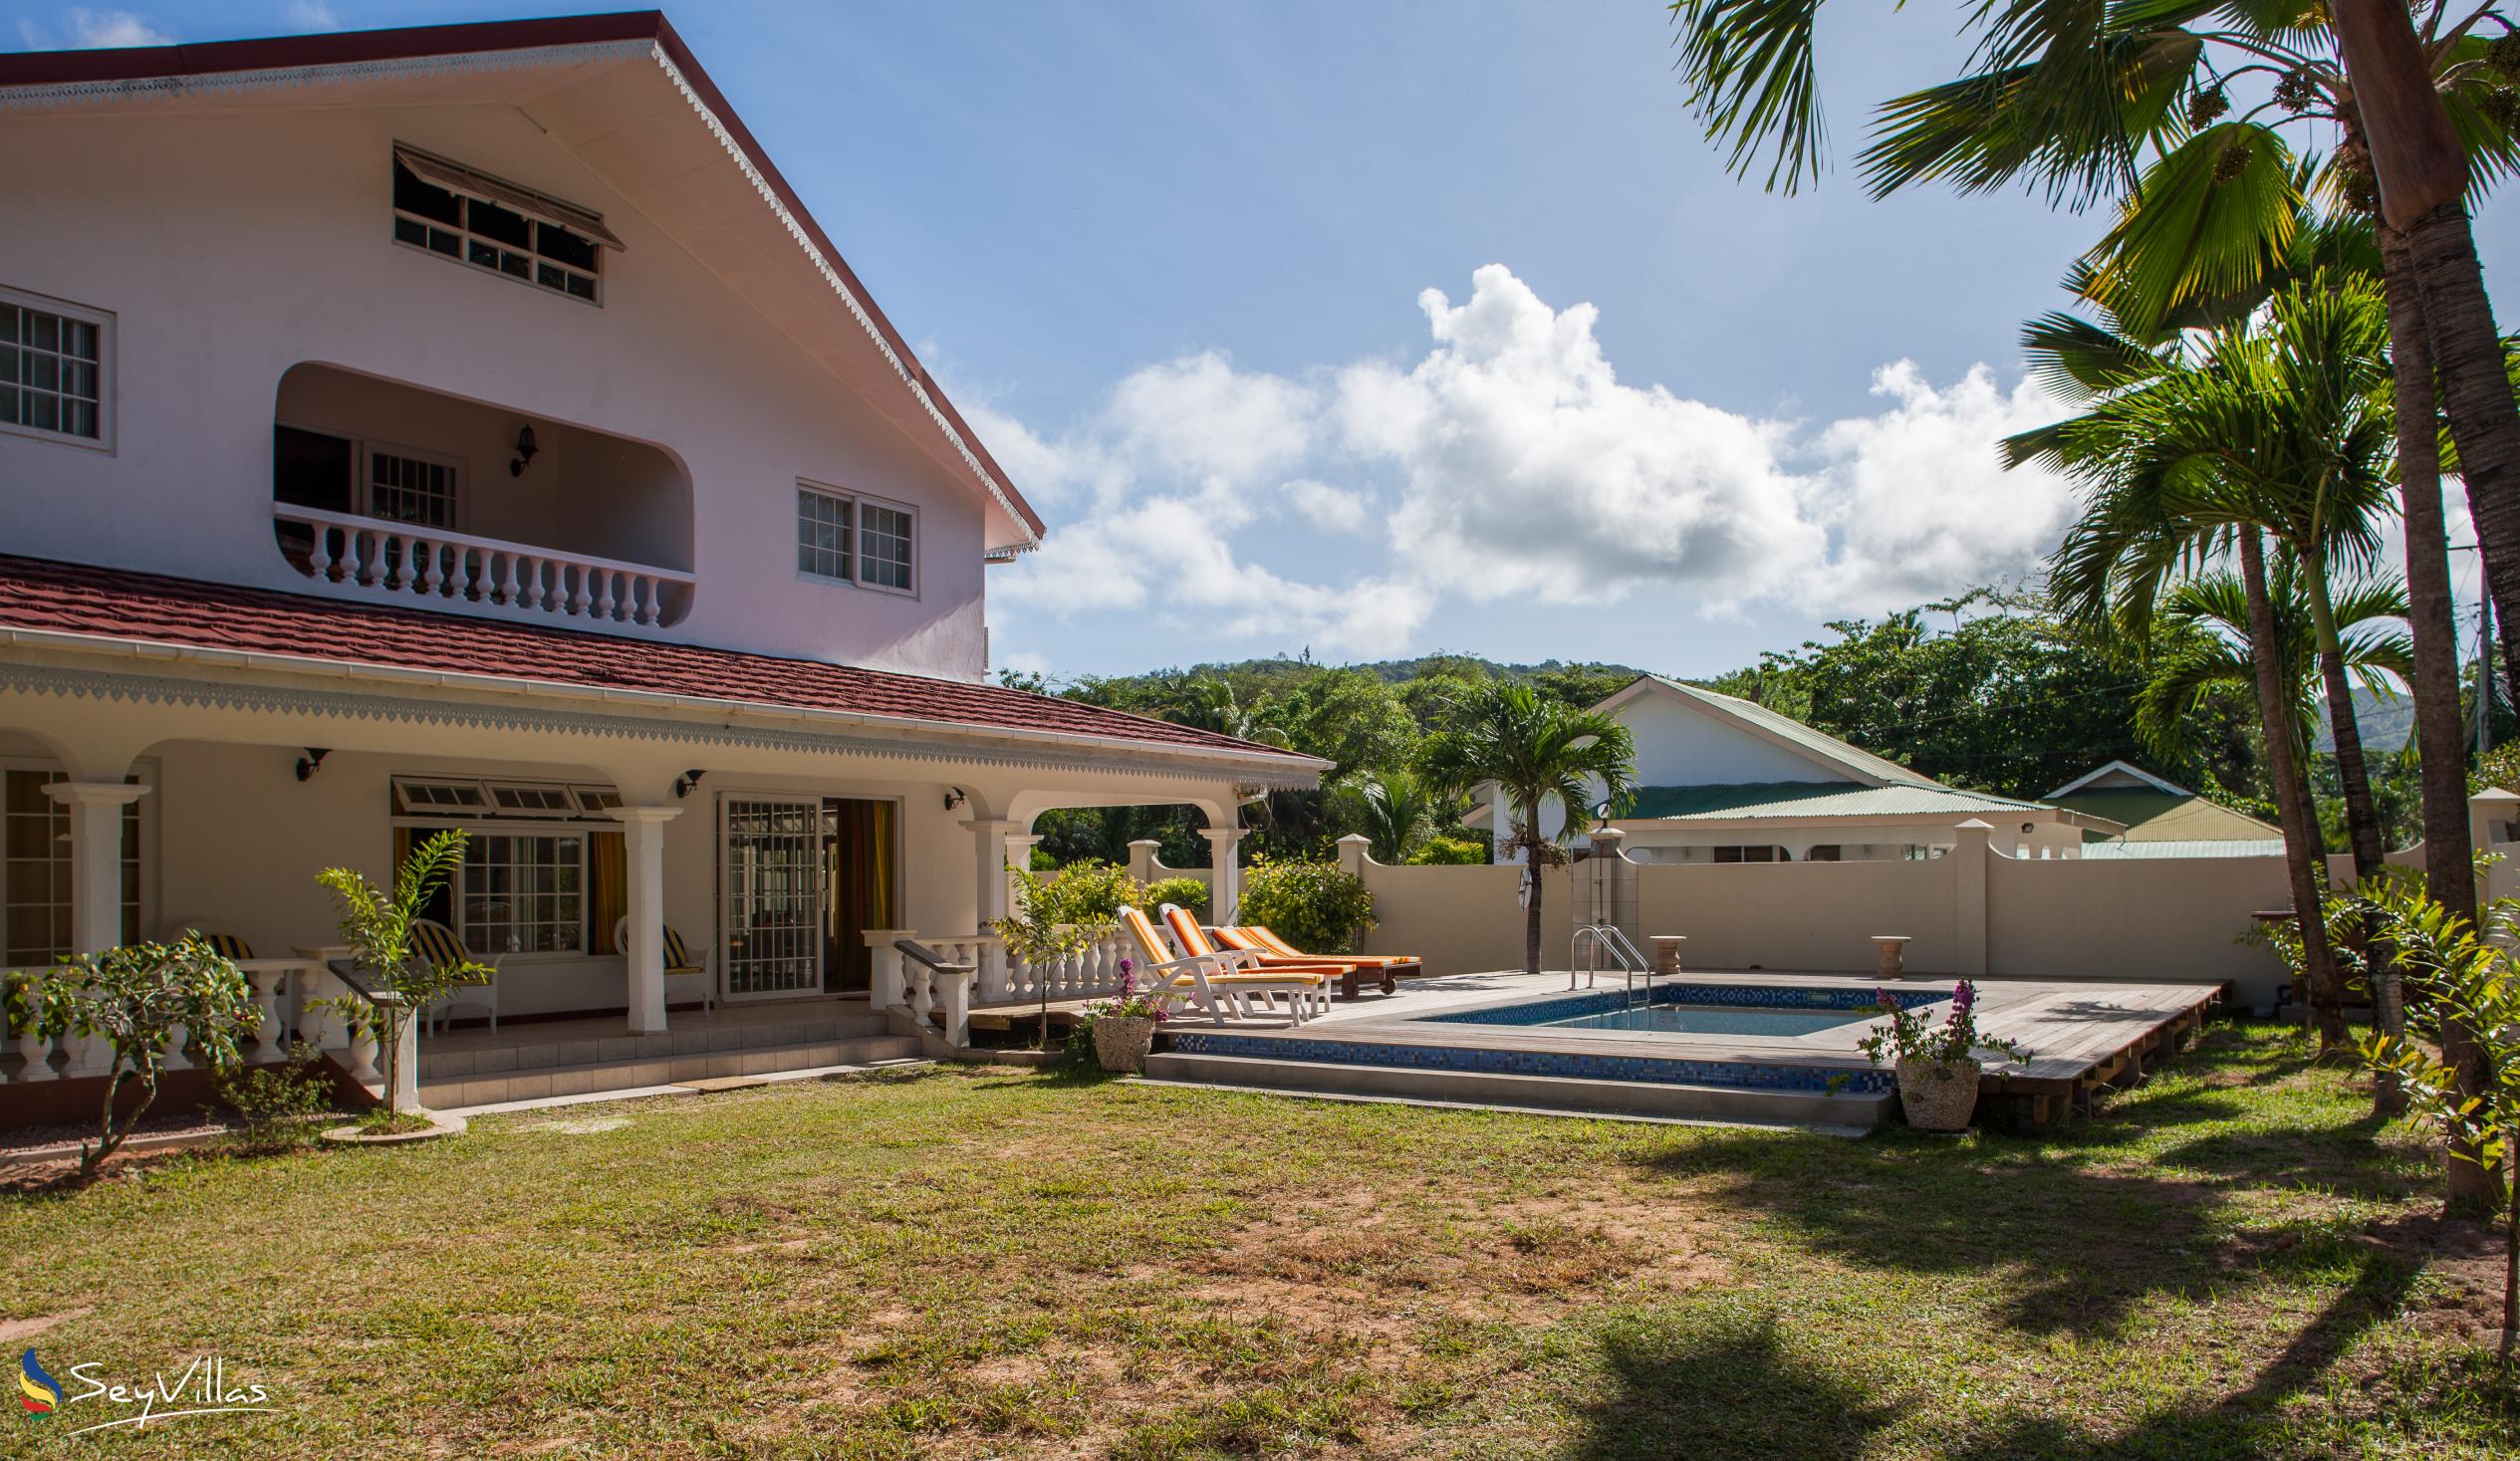 Photo 4: Villa Confort - Outdoor area - Praslin (Seychelles)